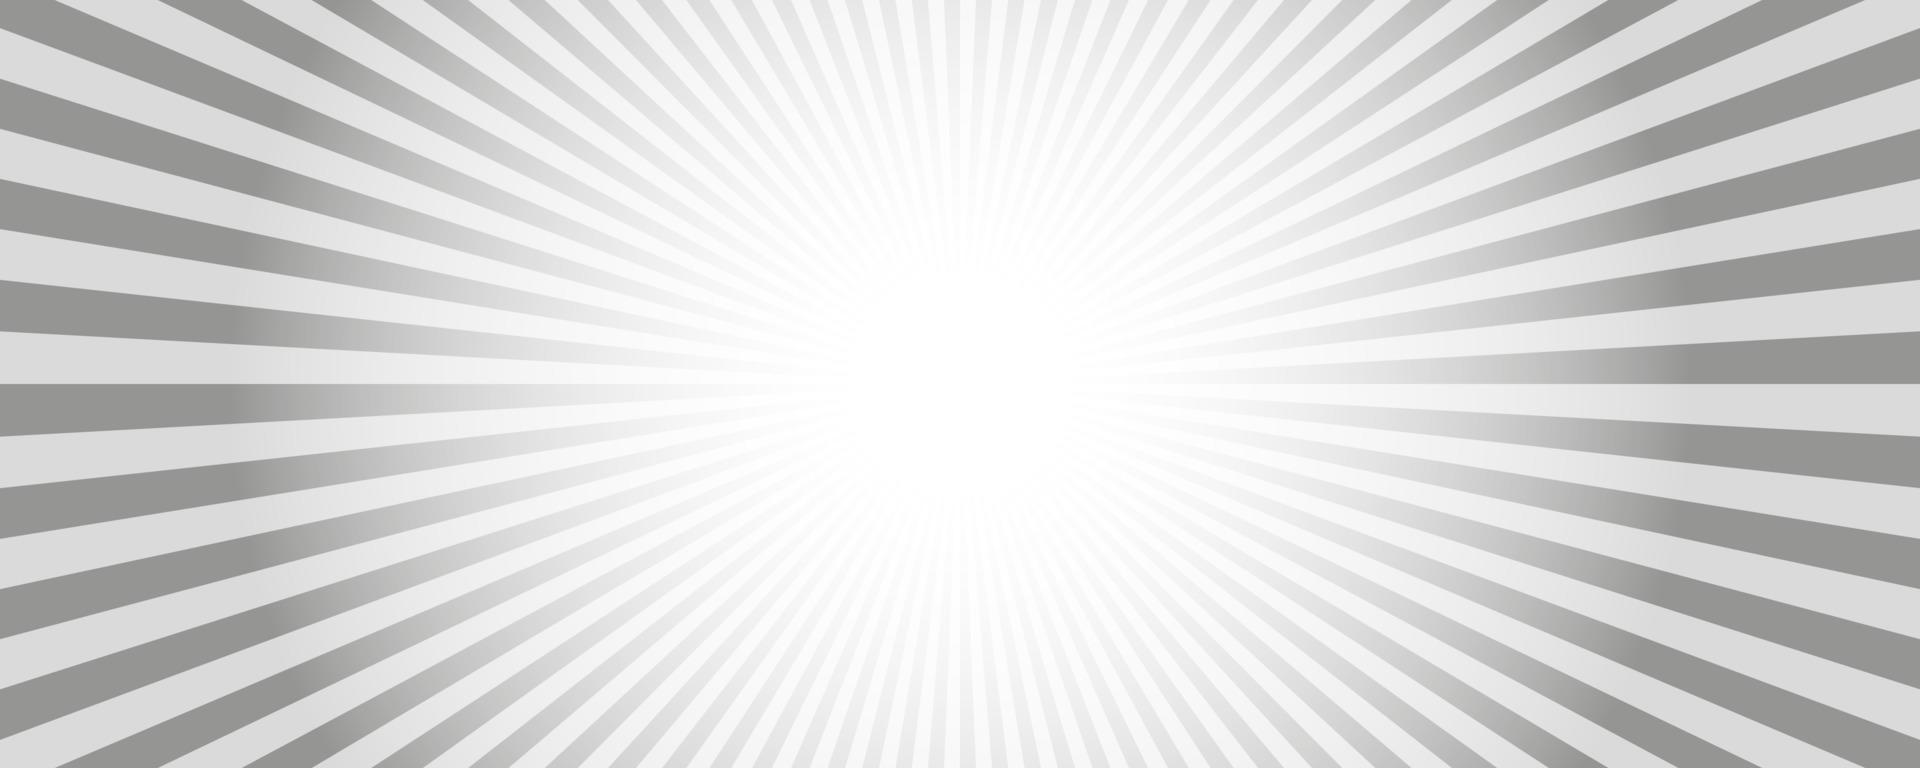 Hintergrund der Sonnenstrahlen. weißes und graues radiales abstraktes komisches Muster. Vektor Explosion abstrakte Linien Hintergrund